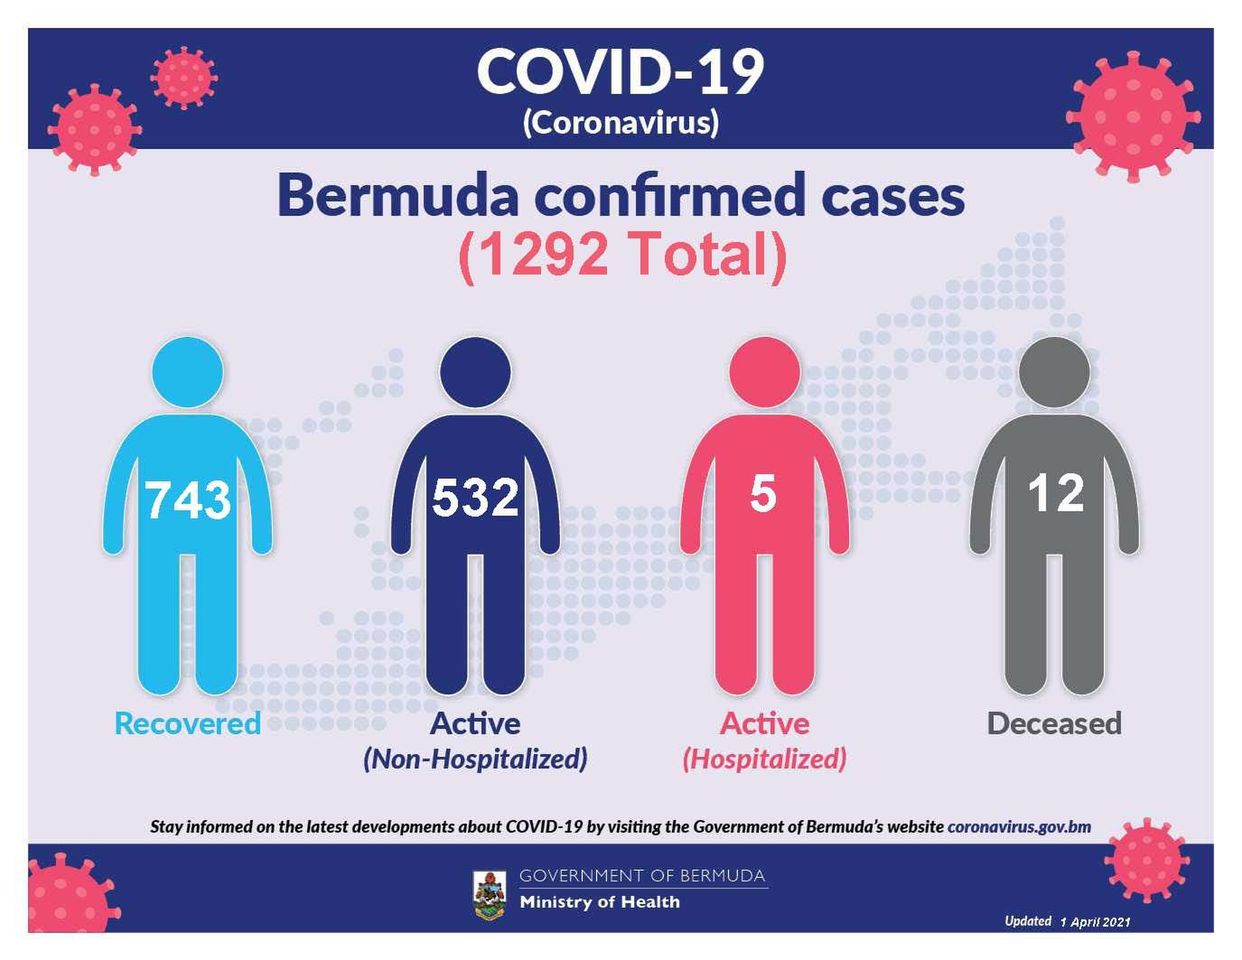 75 new COVID-19 cases reported in Bermuda, 1 April 2021